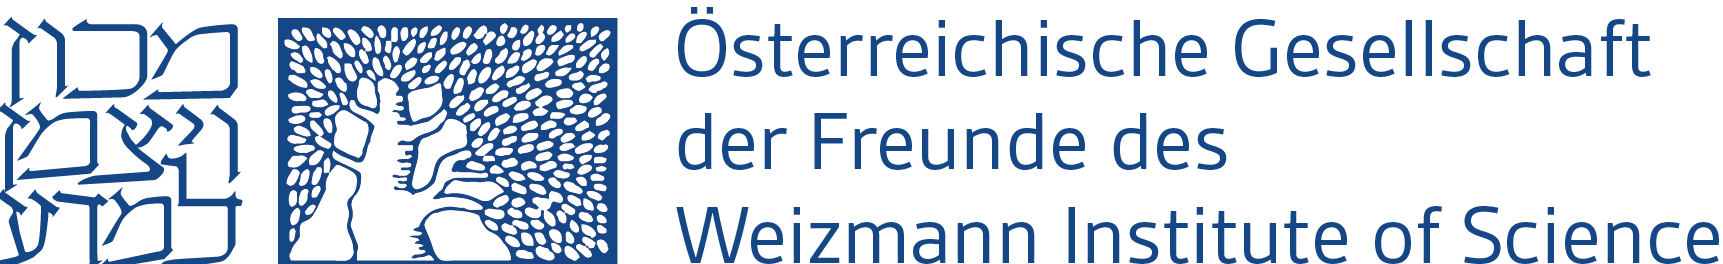 Österreichische Gesellschaft der Freunde des Weizmann Institute of Science